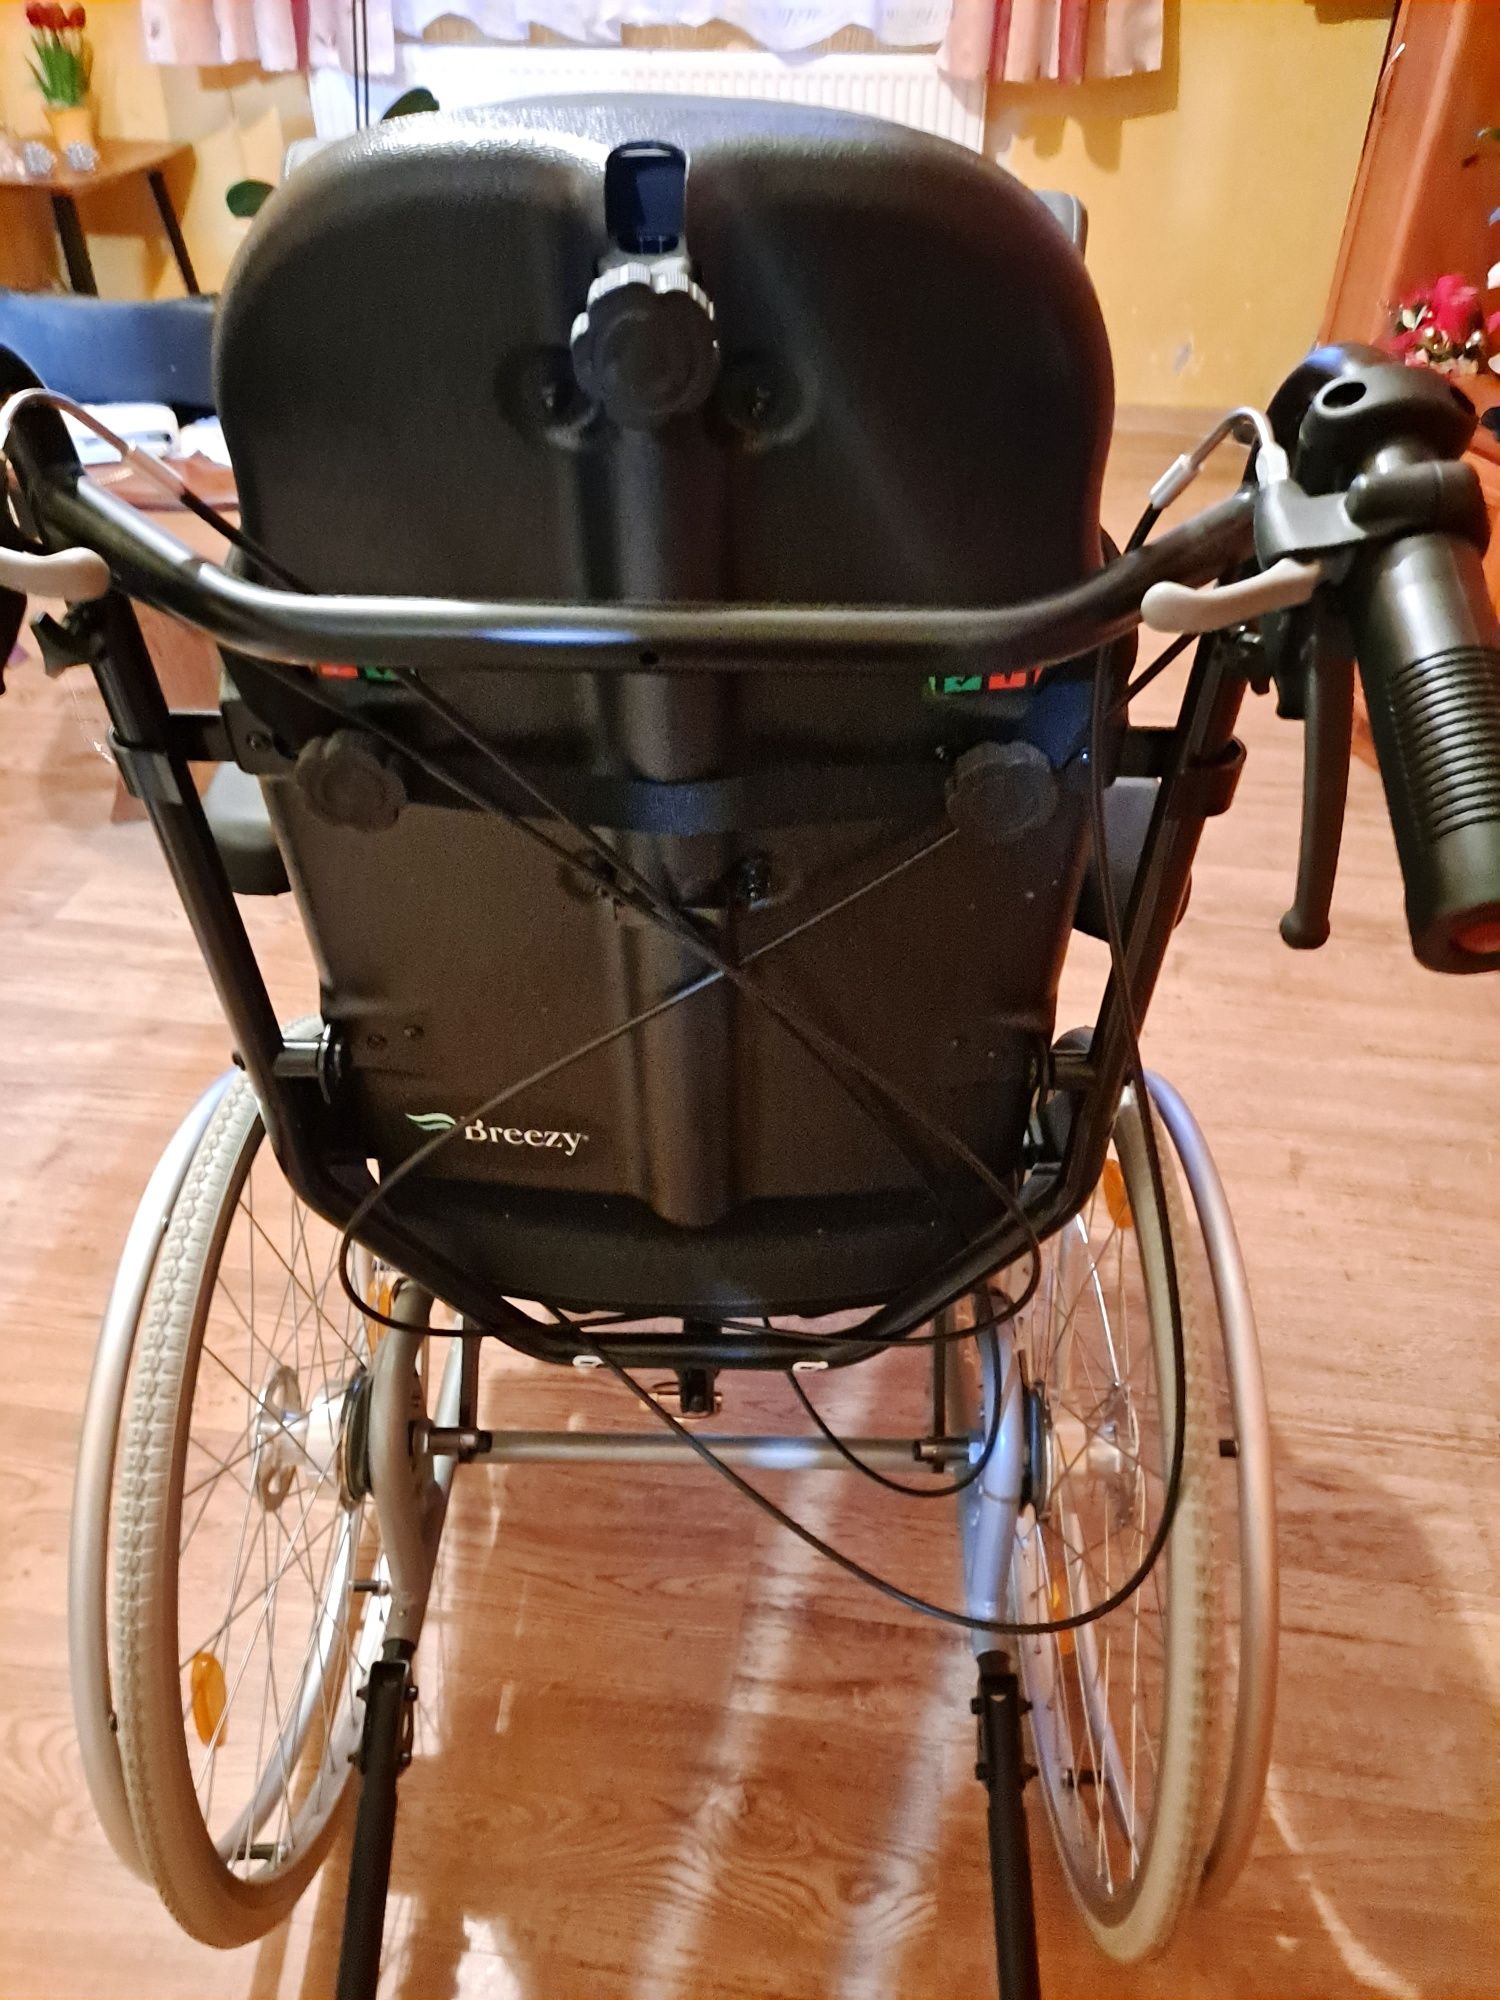 Specjalistyczny Wózek inwalidzki